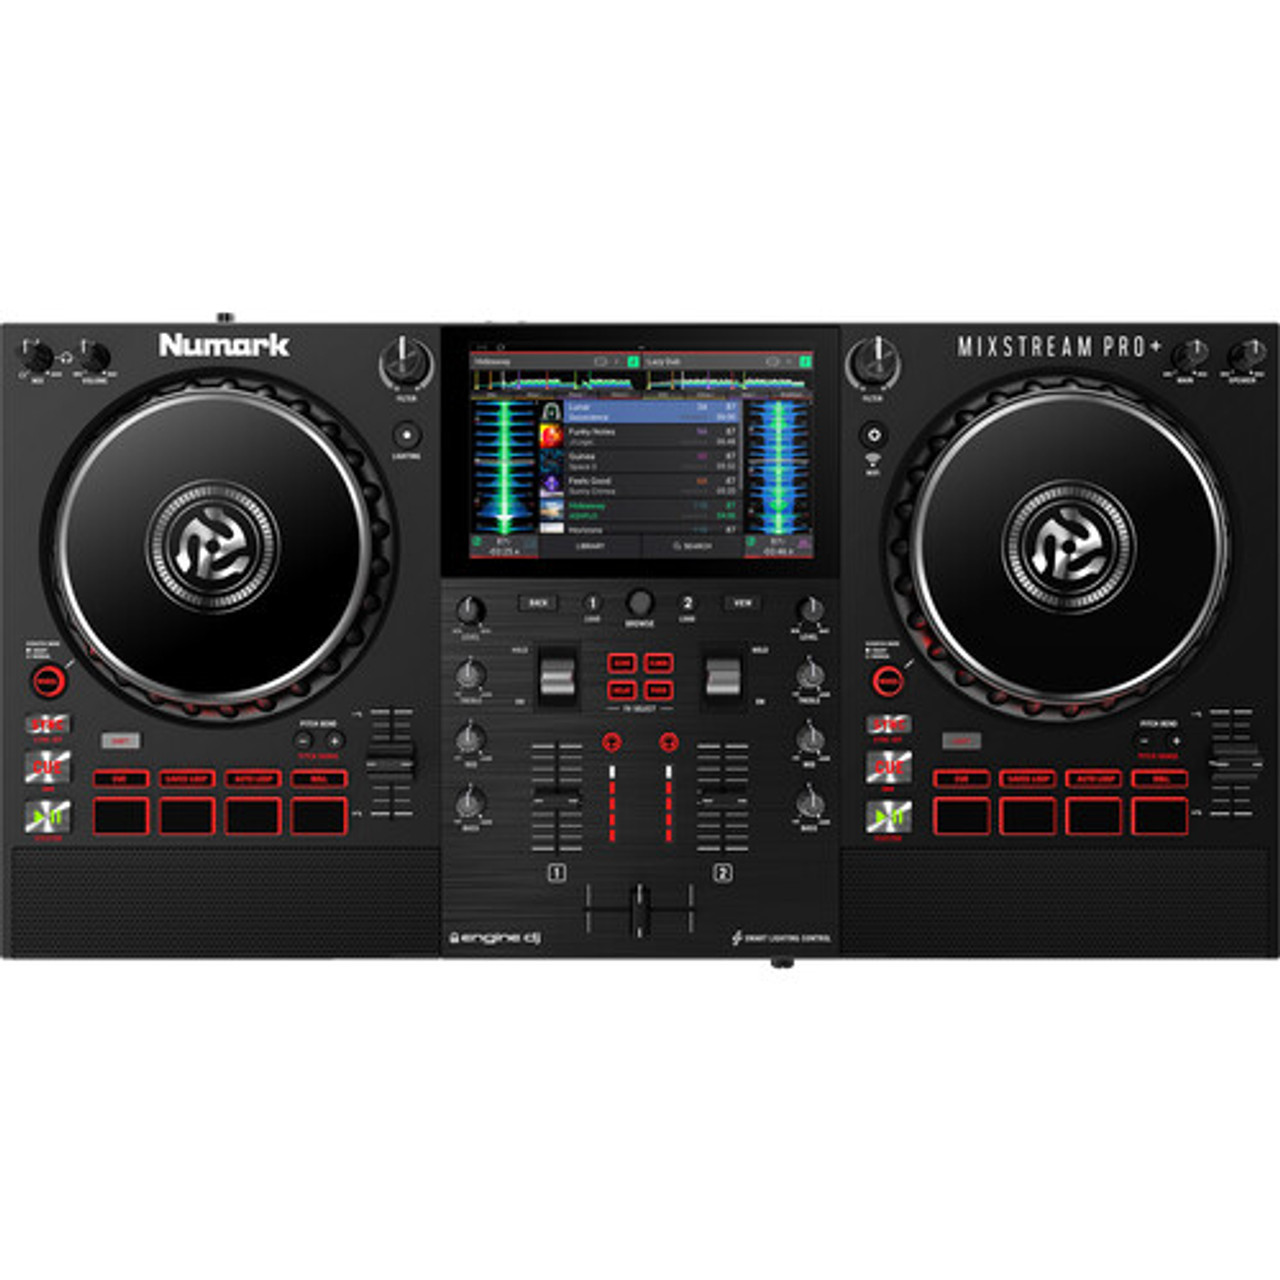 Numark Numark Mixstream Pro+ Standalone DJ Controller with Wi-Fi